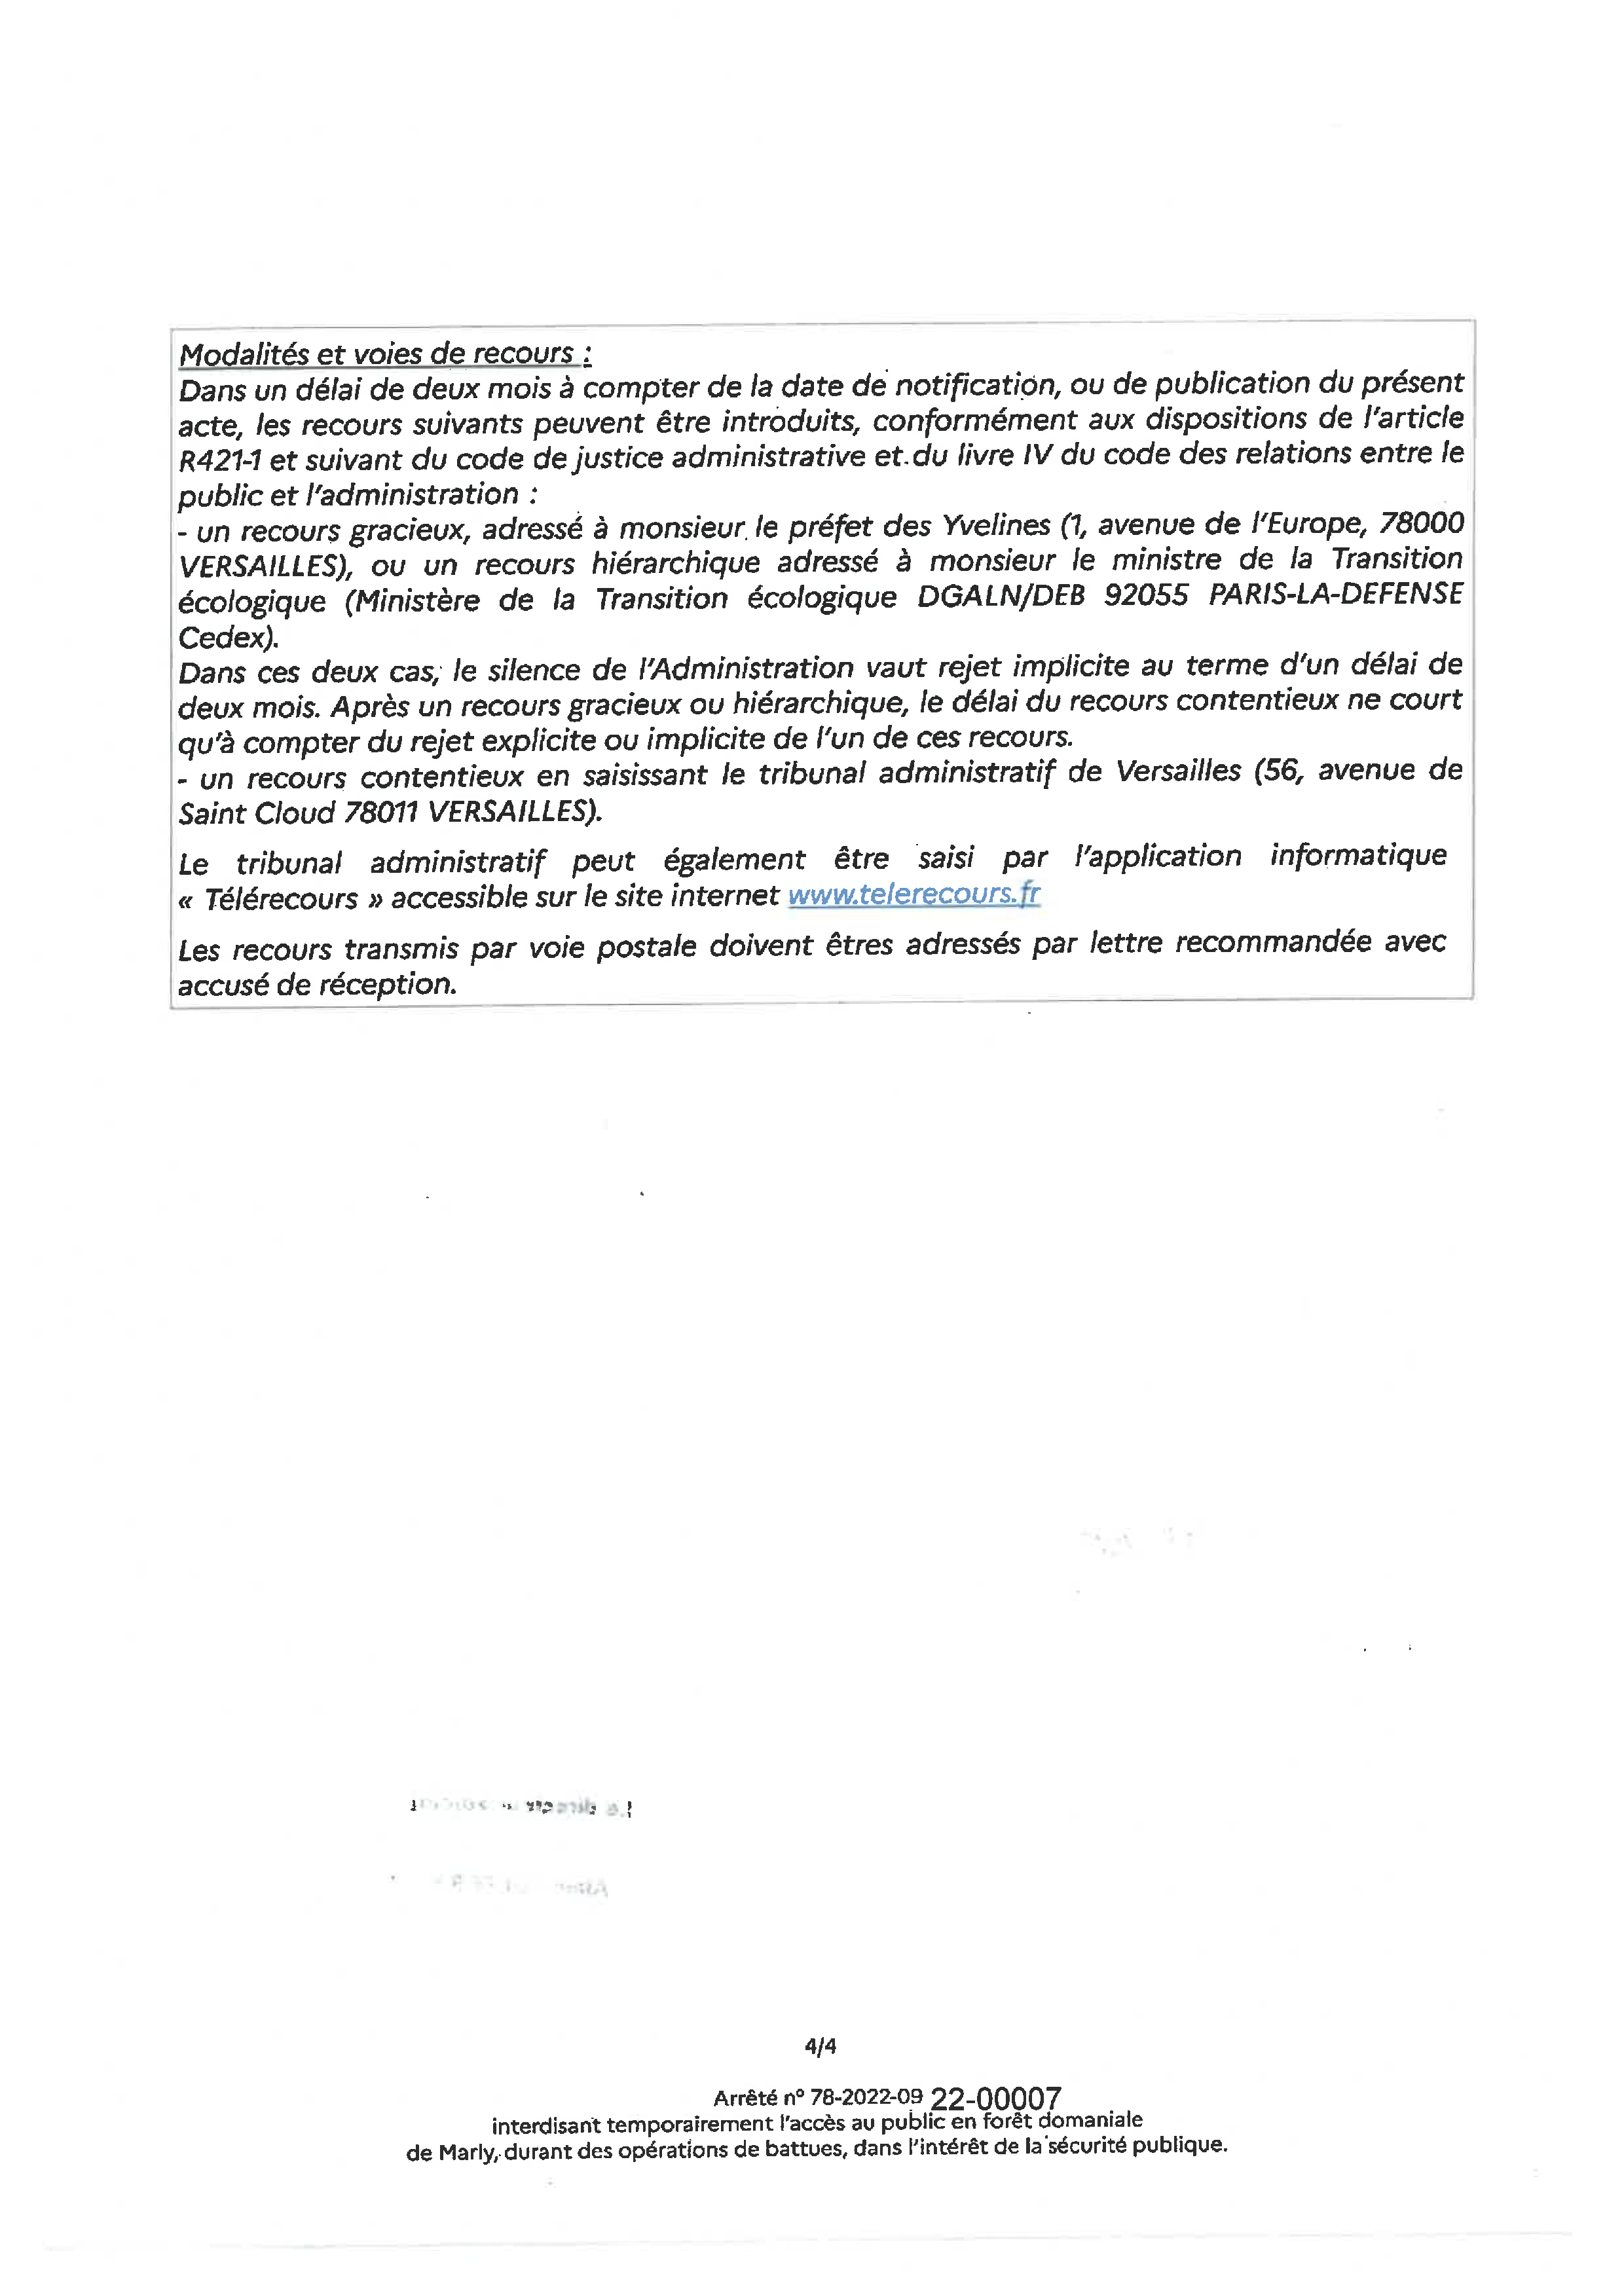 Arrete interdisant lacces en foret de marly 2022 Page 4